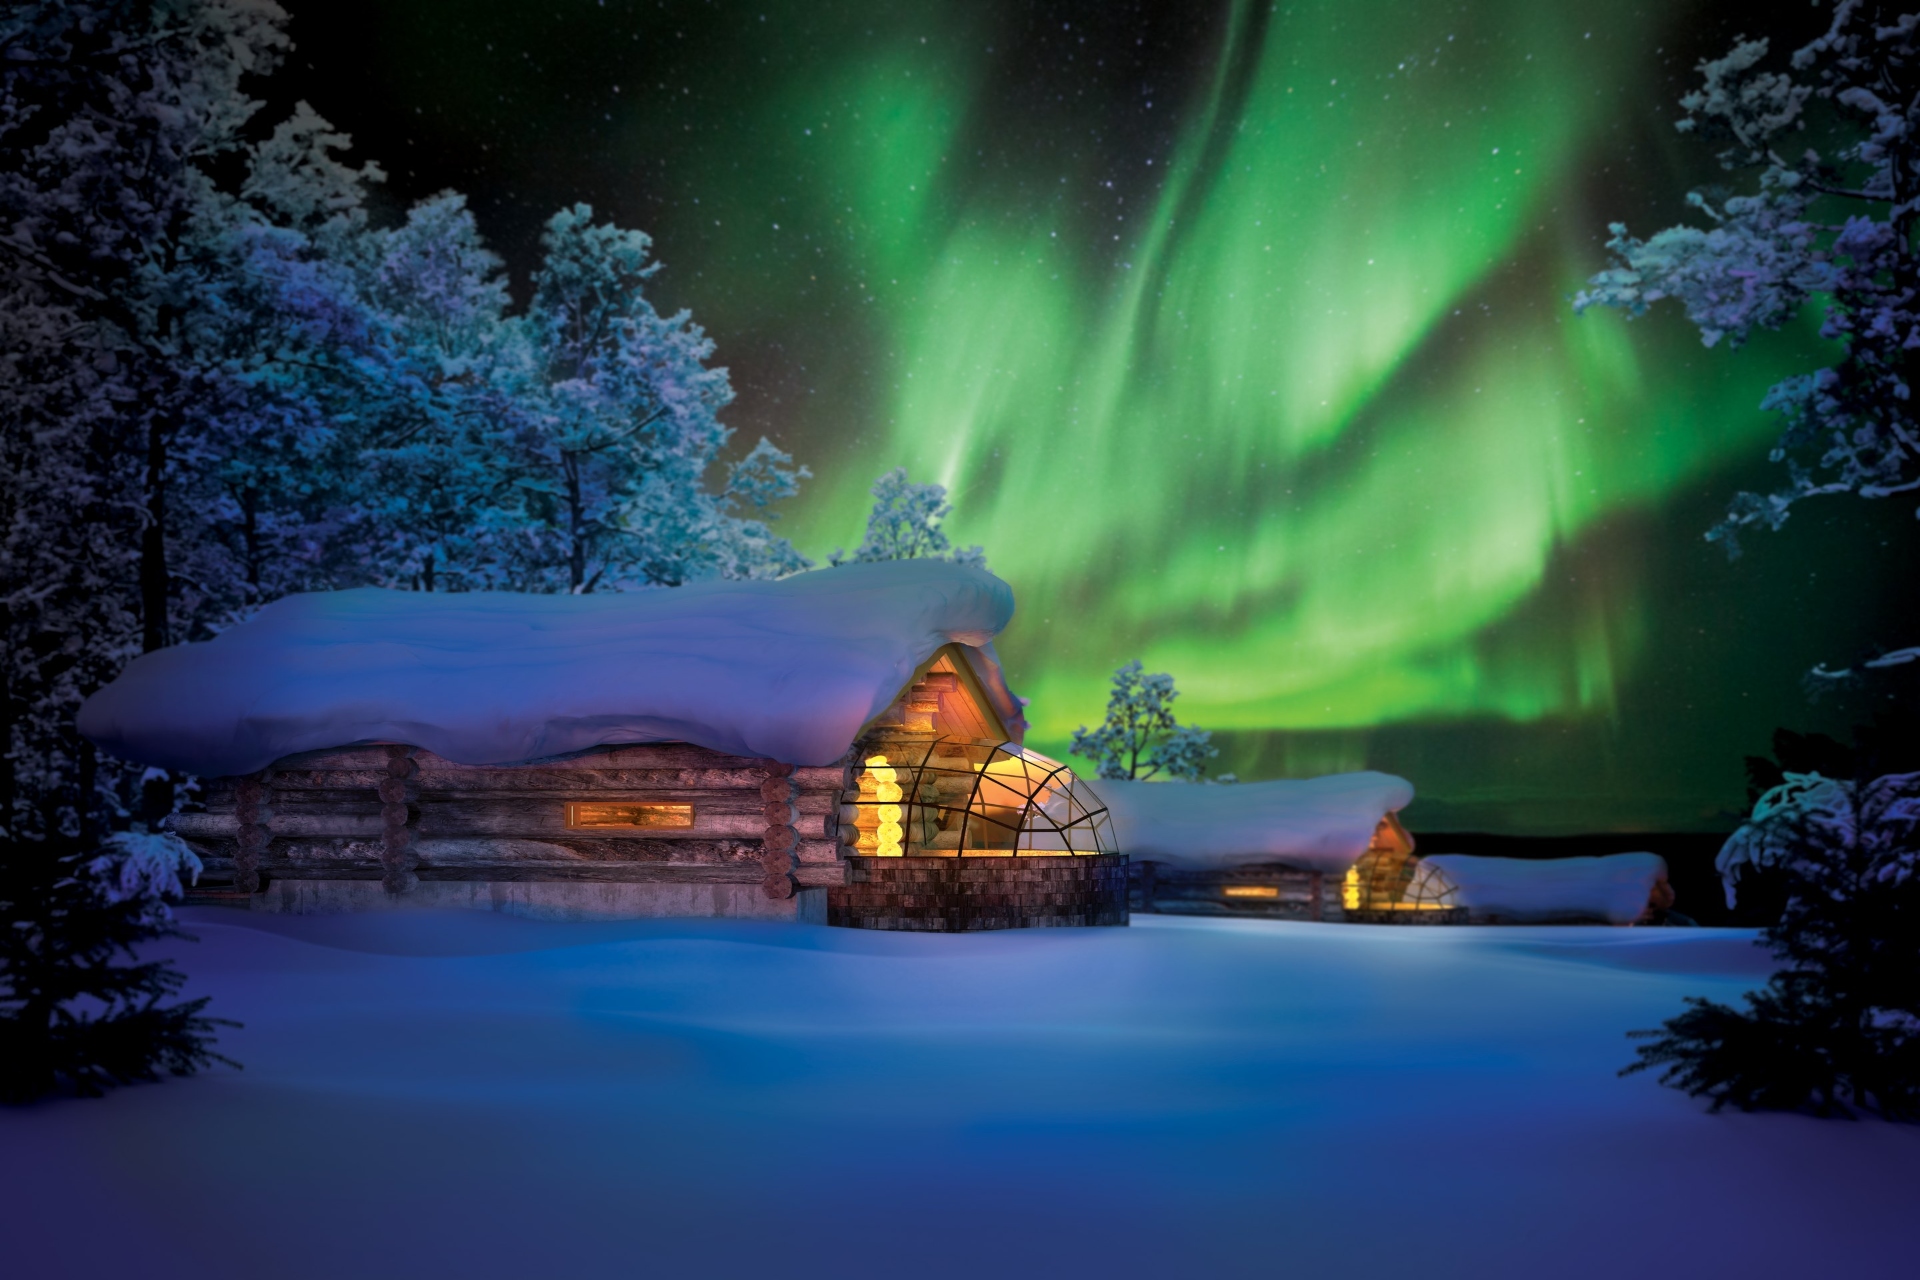 voyage en finlande aurore boreale